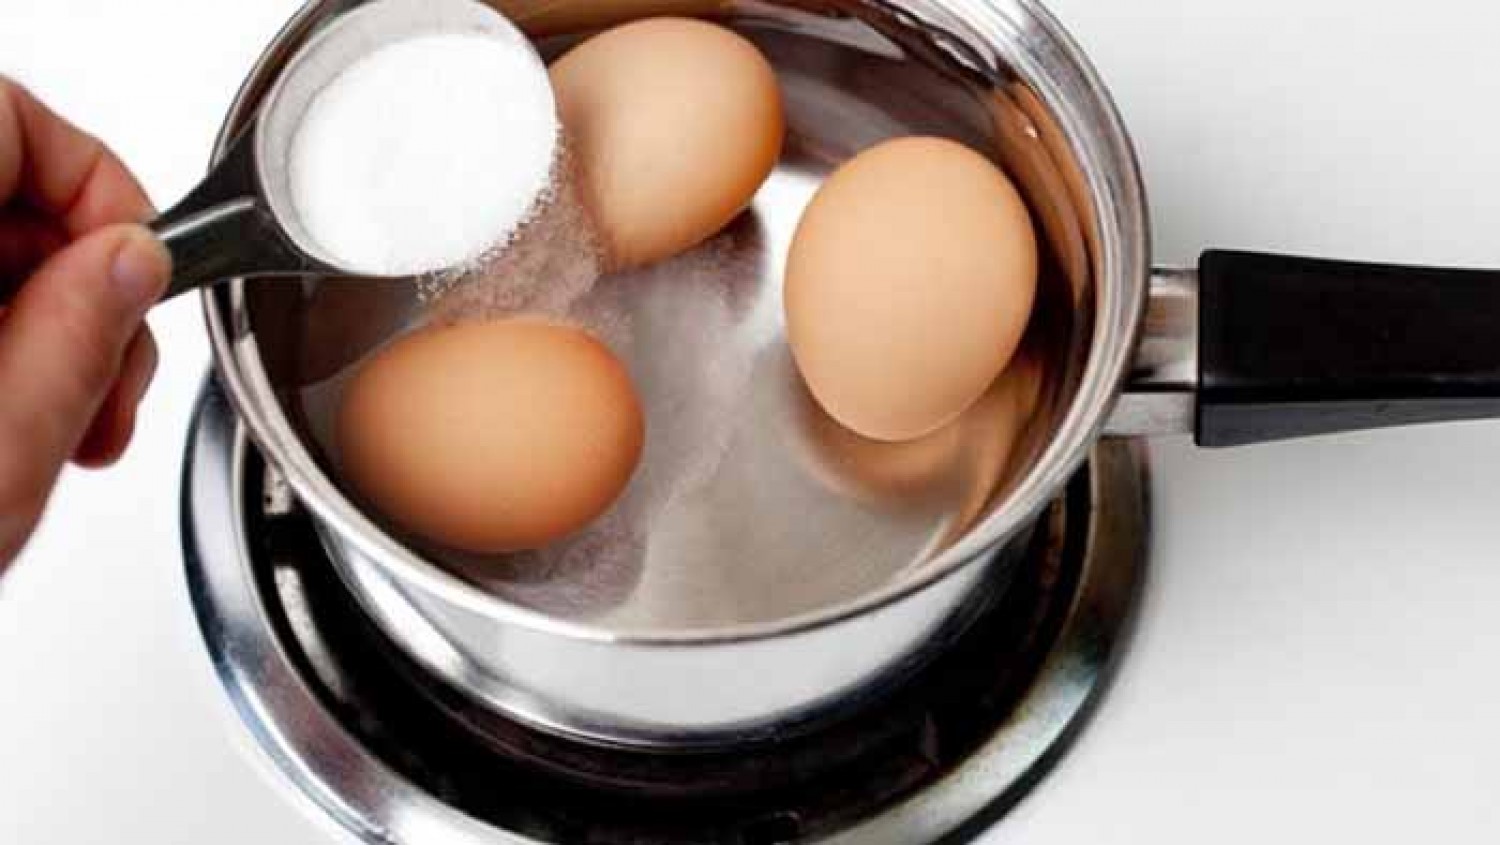 Egy hasznos tipp: tegyél egy kevés szódabikarbónát a tojások főzővizébe